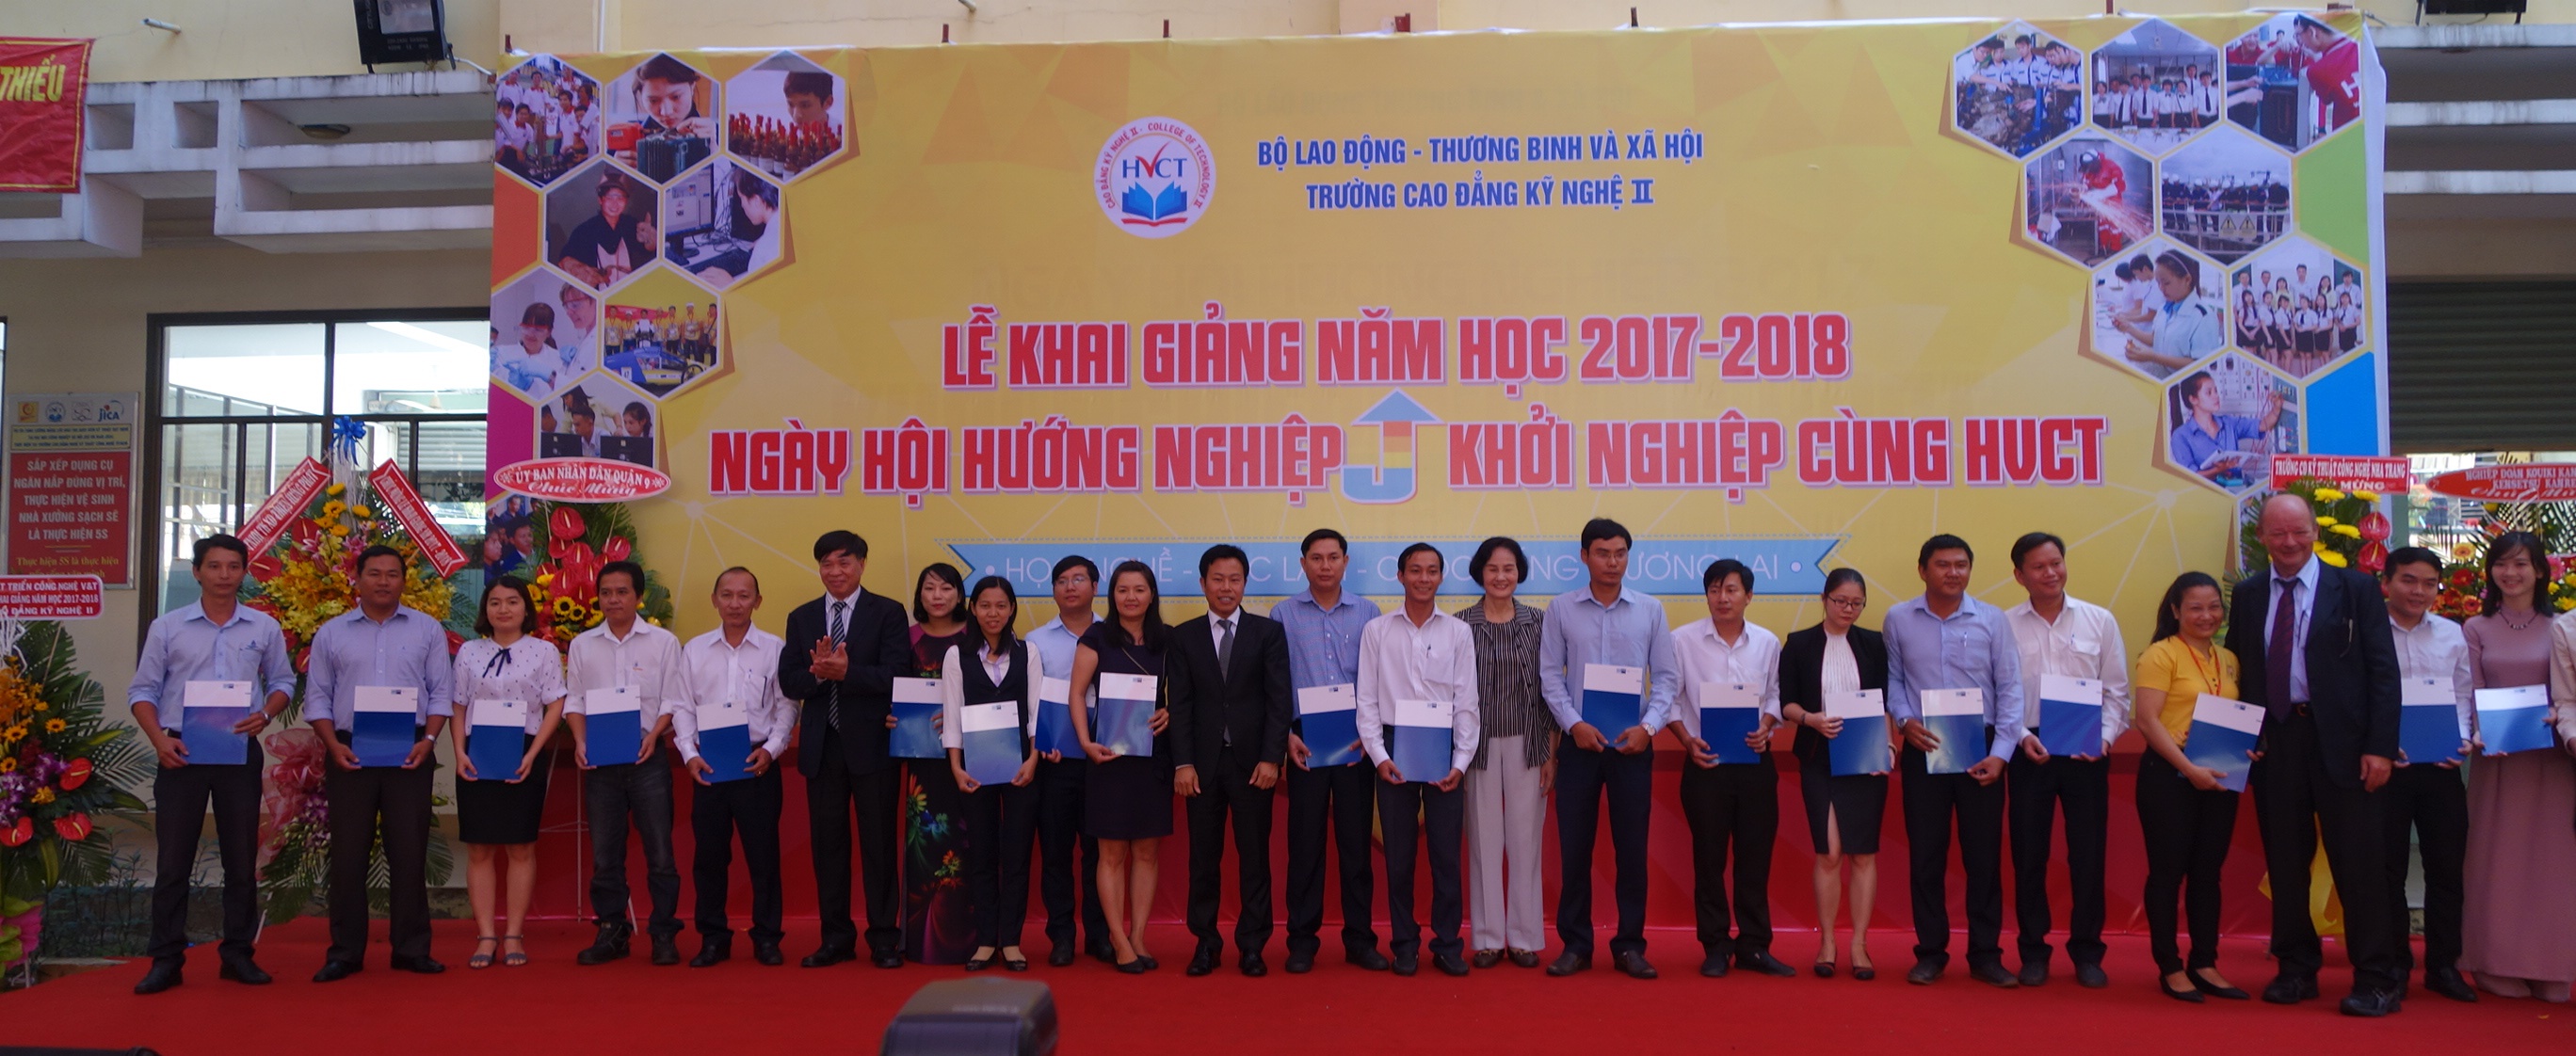 ​23 Vietnamese get certificate of equivalence of German sewerage engineering